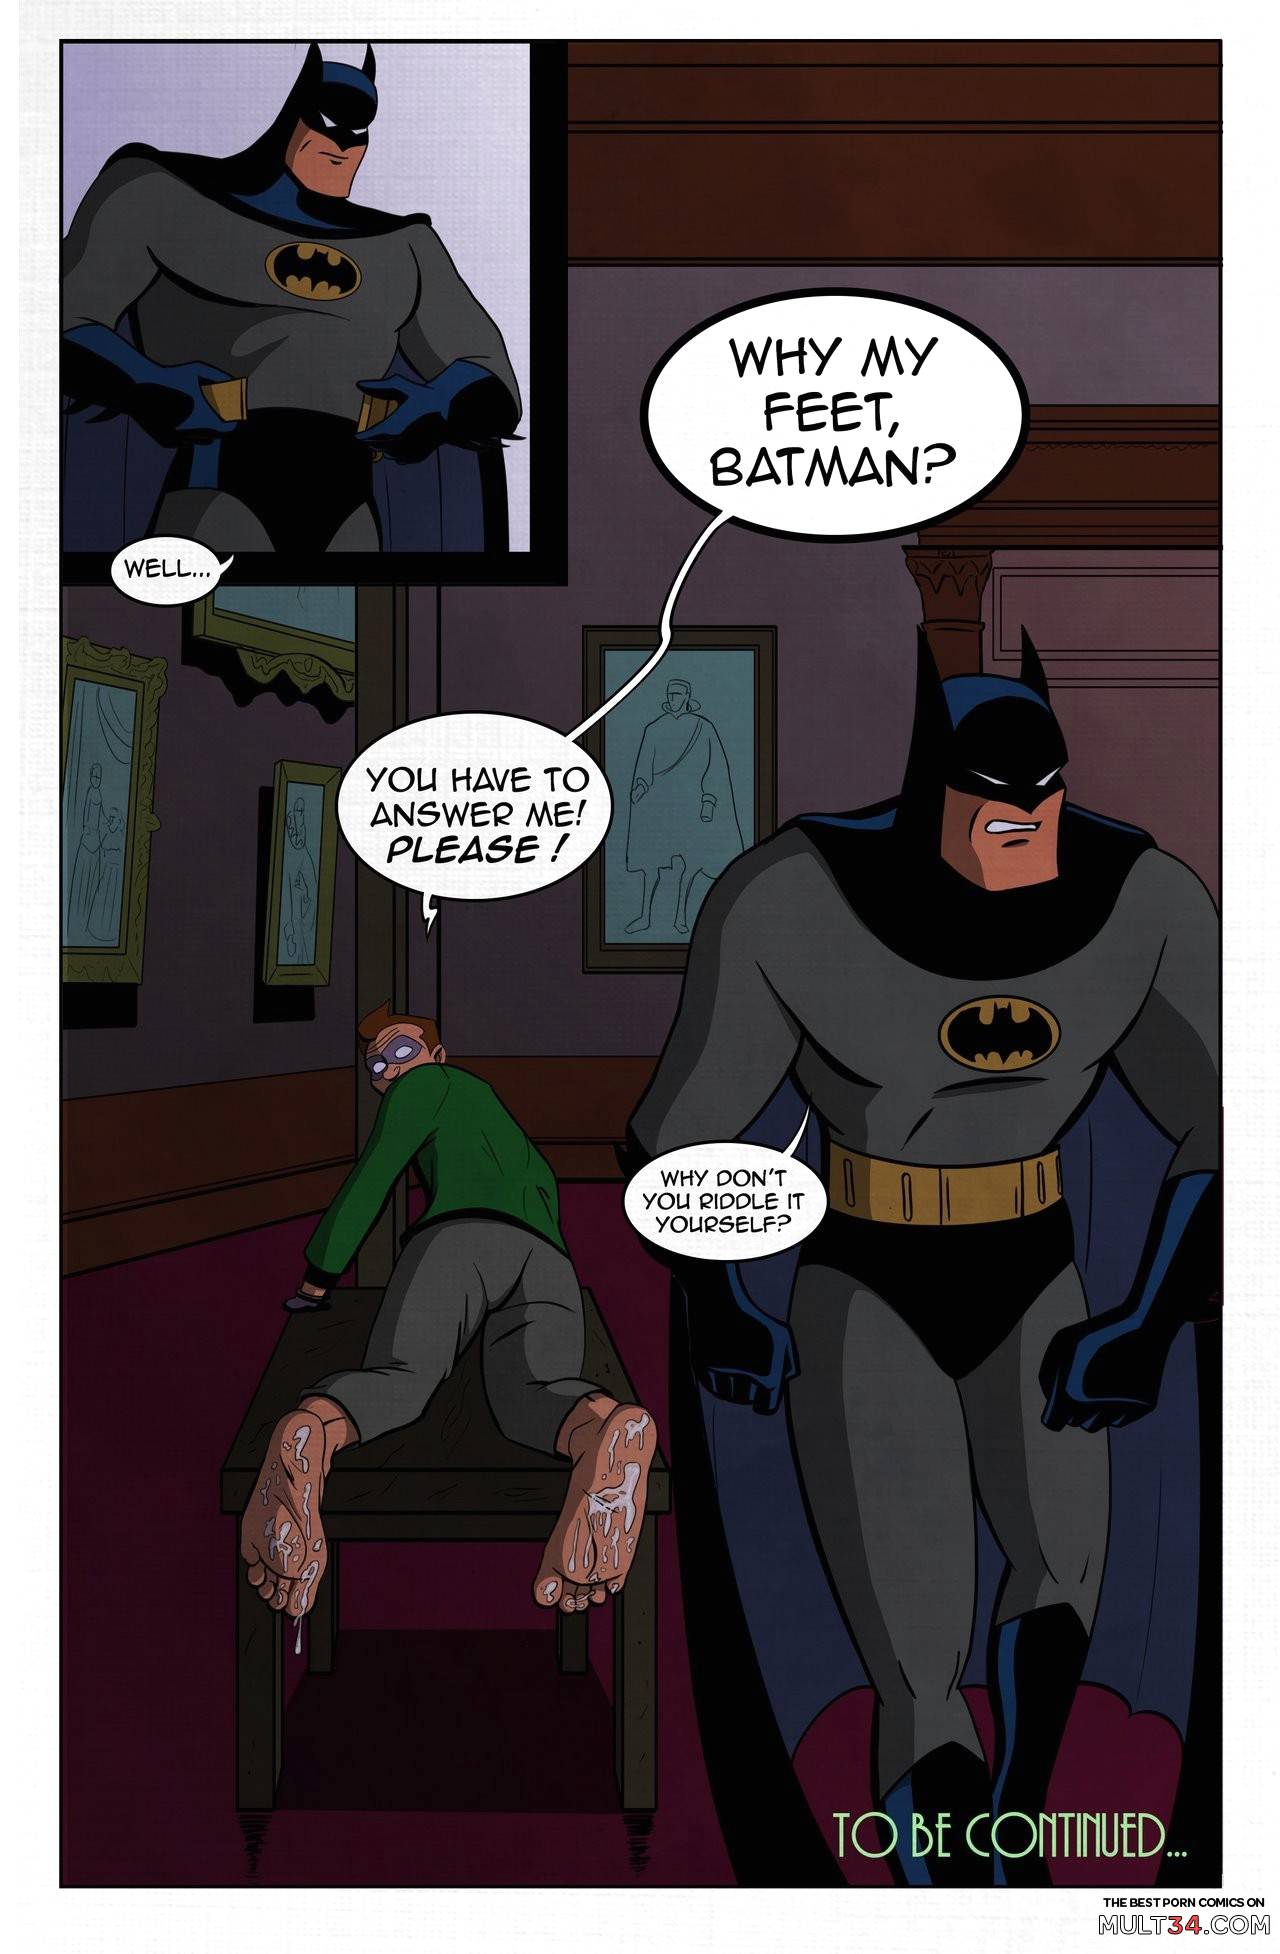 Gay Batman Porn Comics - Batman - The Foot Soldier gay porn comic - the best cartoon porn comics,  Rule 34 | MULT34